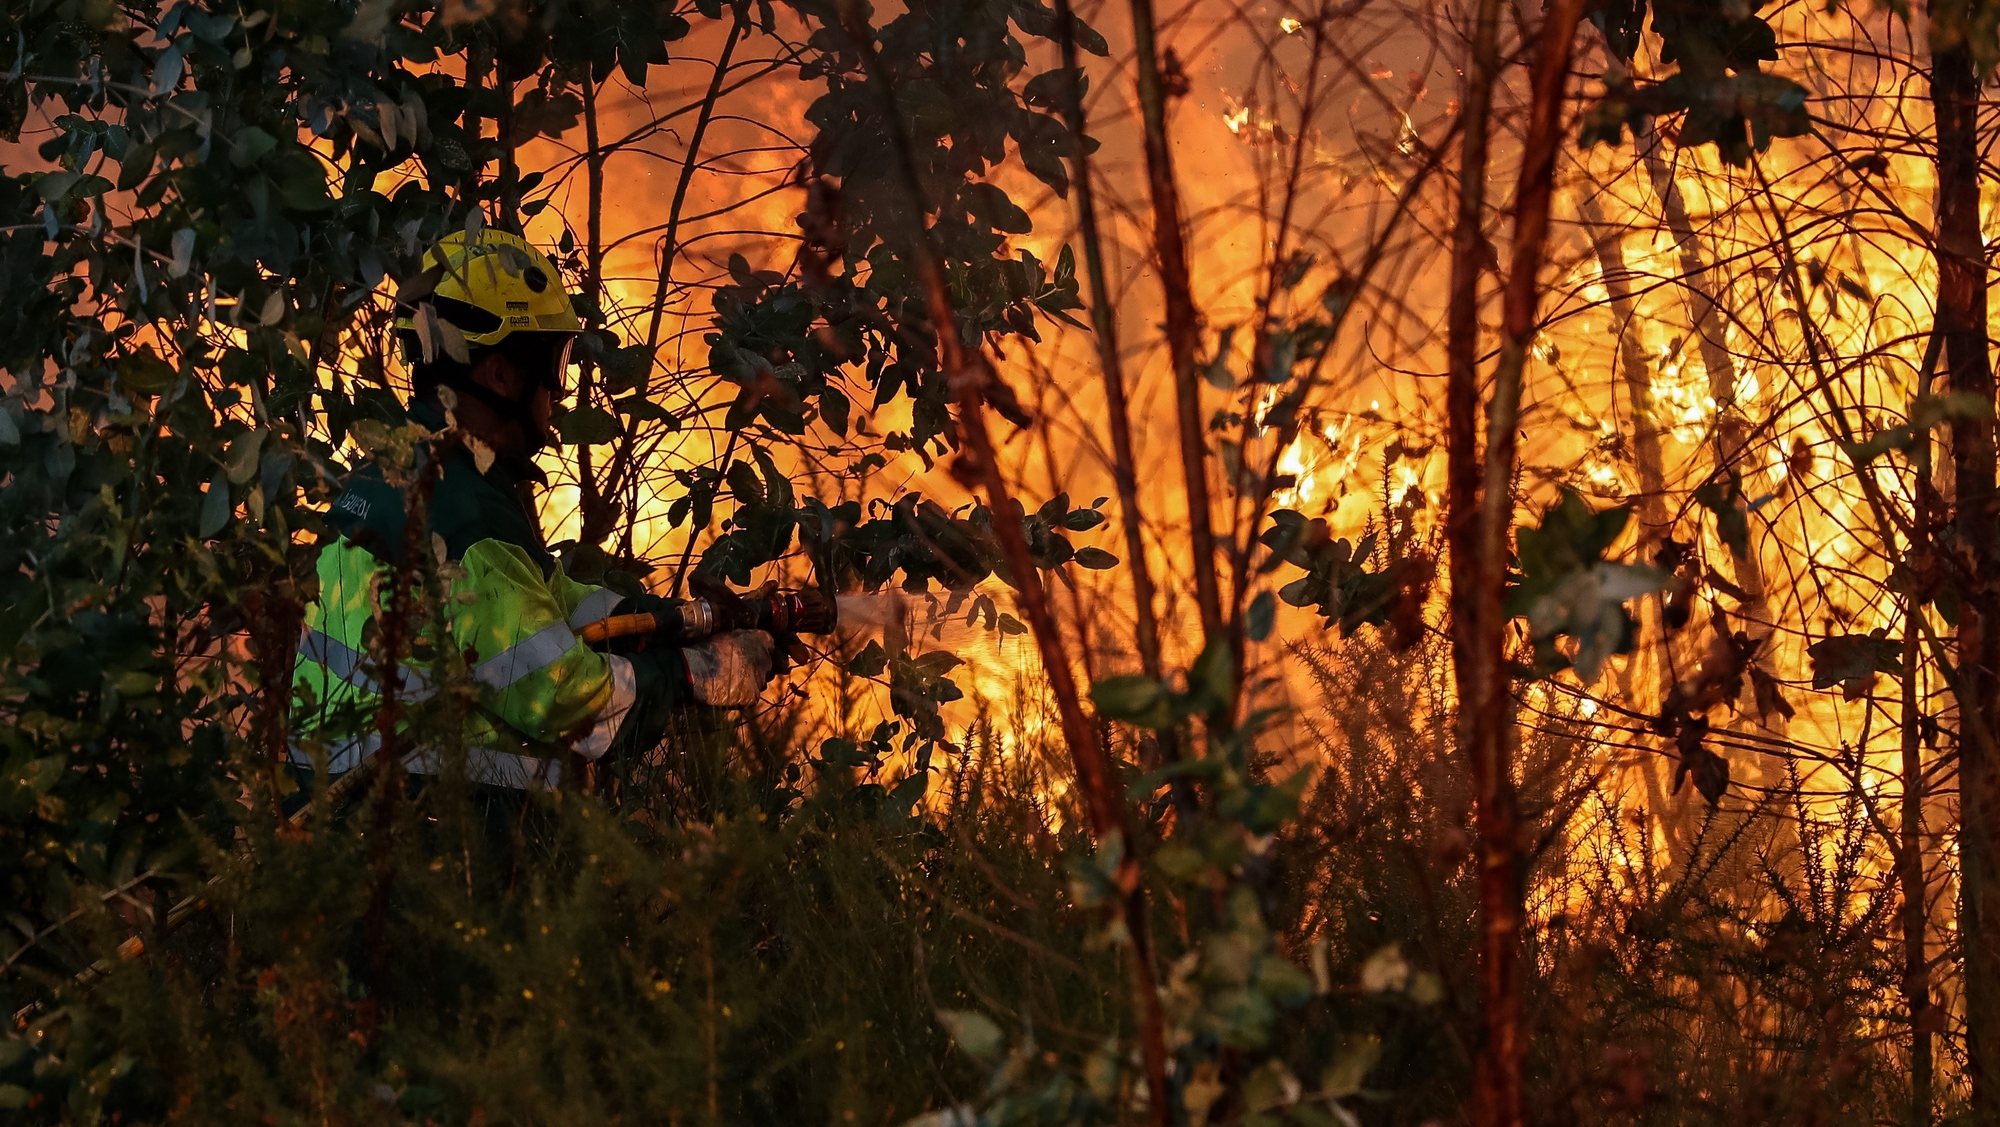 Um bombeiro durante o combate ao incêndio florestal em Veiga, Águeda, 5 de setembro de 2019. No início da tarde combatiam as chamas em Águeda 52 operacionais com 15 viaturas, bem como cinco meios aéreos. PAULO NOVAIS/LUSA